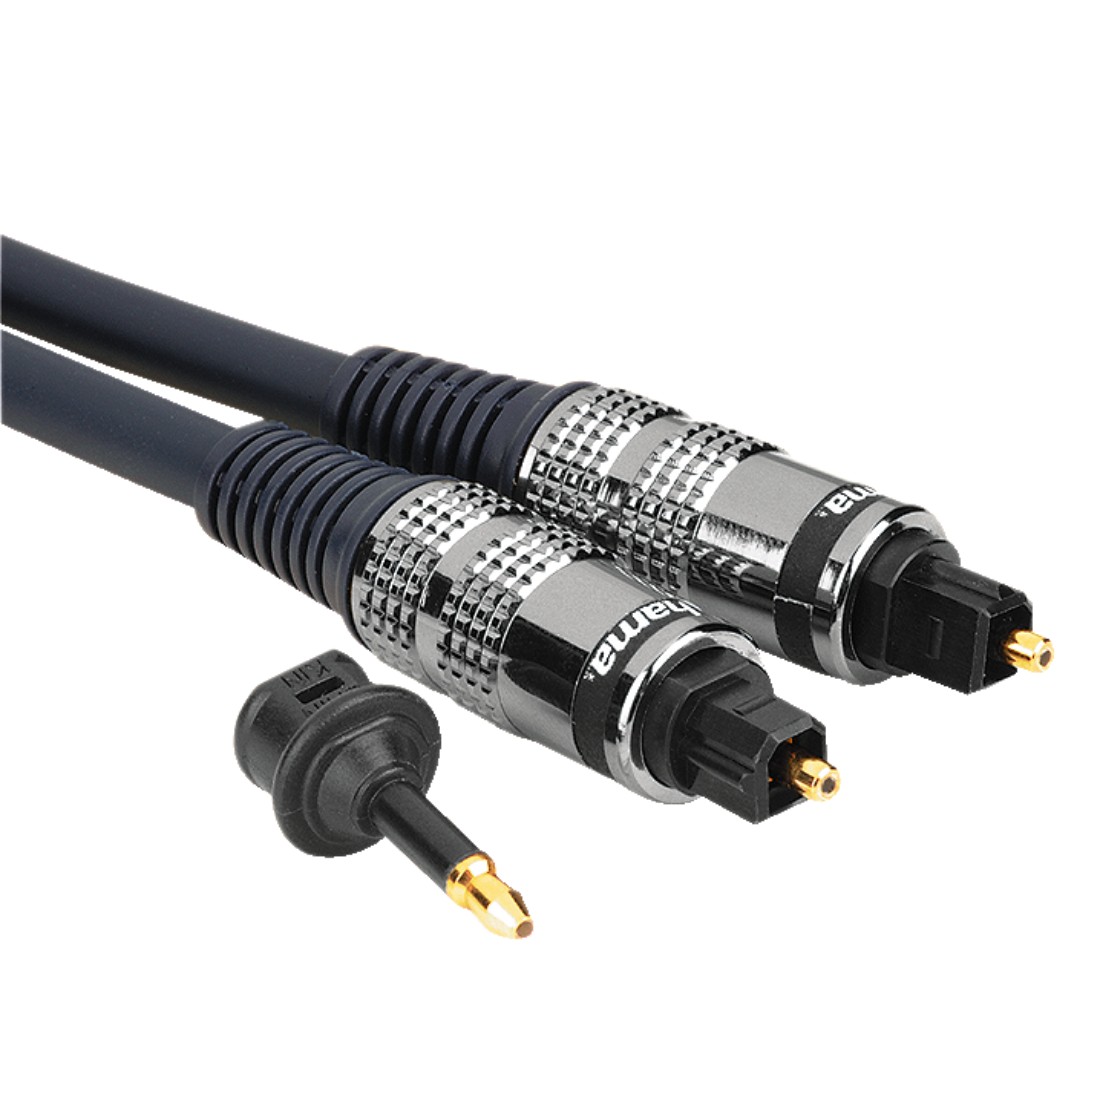 Звук через оптический кабель. SPDIF оптический кабель 3.5 RCA. 3.5 Мм к RCA SPDIF коаксиальный цифровой аудиокабель. Разъем s/PDIF коаксиальный. Oehlbach Toslink Digital Optical Cable 217.